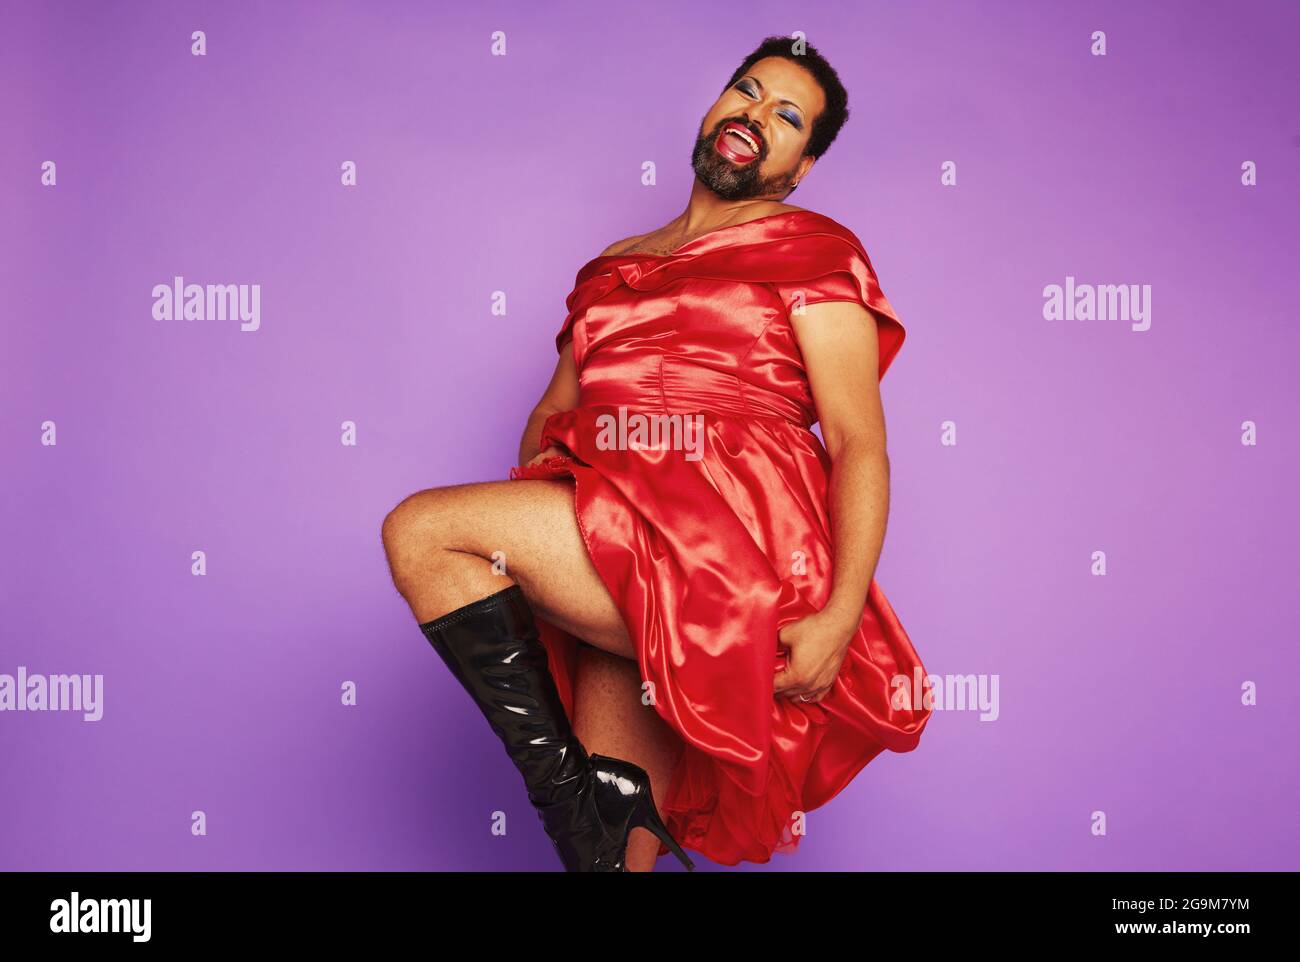 Toda la duración del hombre gay vestido de mujeres bailando y actuando en el estudio. Hombre andrógino vestido rojo brillante. Foto de stock